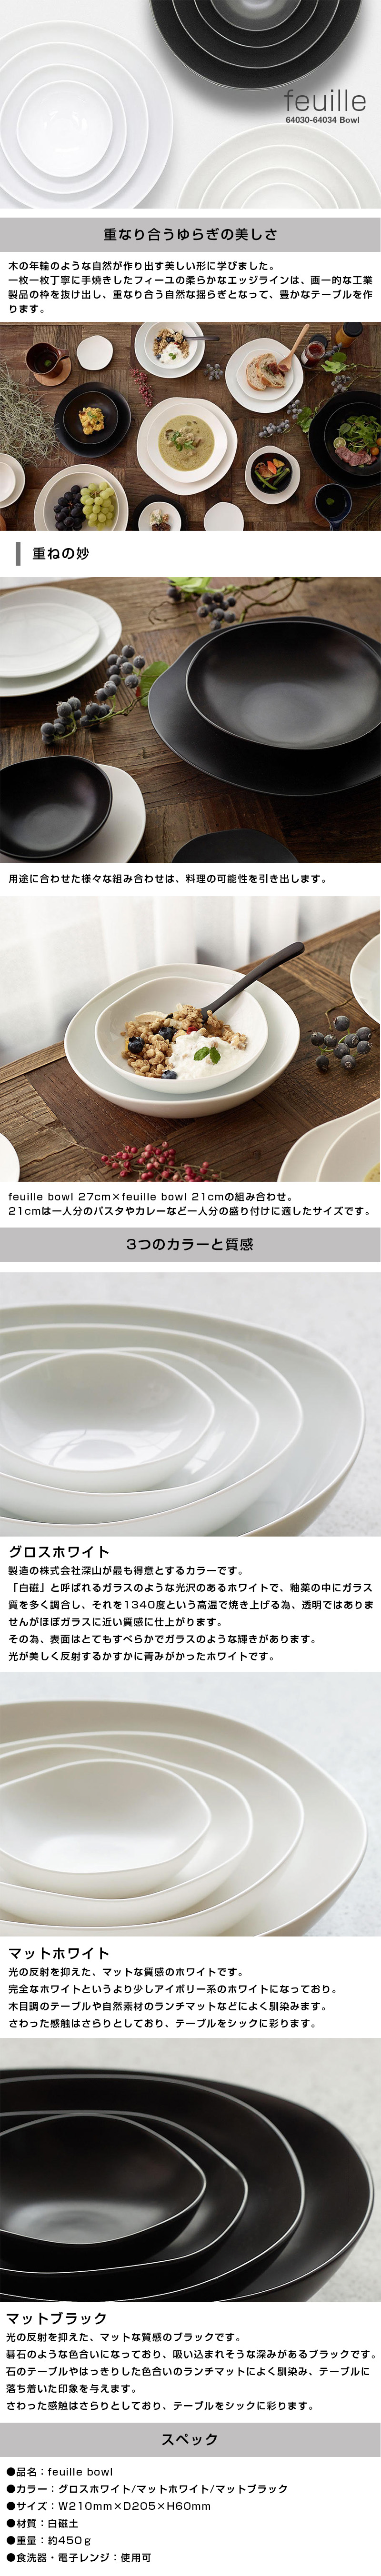 フィーユボウル feuille bowl 21cmのLP一枚画像。feuille bowl！ ●重なり合うゆらぎの美しさ。：木の年輪のような自然が作り出す美しい形に学びました。一枚一枚丁寧に手焼きしたフィーユの柔らかなエッジラインは、画一的な工業製品の枠を抜け出し、重なり合う自然な揺らぎとなって、豊かなテーブルを作ります。 ・重ねの妙：用途に合わせた様々な組み合わせは、料理の可能性を引き出します。feuille bowl 27cm×feuille bowl 21cmの組み合わせ。21cmは一人分のパスタやカレーなど一人分の盛り付けに適したサイズです。 ●3つのカラーと質感。：・グロスホワイト/製造の株式会社深山が最も得意とするカラーです。「白磁」と呼ばれるガラスのような光沢のあるホワイトで、釉薬の中にガラス質を多く調合し、それを1340度という高温で焼き上げる為、透明ではありませんがほぼガラスに近い質感に仕上がります。その為、表面はとてもすべらかでガラスのような輝きがあります。光が美しく反射するかすかに青みがかったホワイトです。 ・マットホワイト/光の反射を抑えた、マットな質感のホワイトです。完全なホワイトというより少しアイボリー系のホワイトになっており。木目調のテーブルや自然素材のランチマットなどによく馴染みます。さわった感触はさらりとしており、テーブルをシックに彩ります。 ・マットブラック/光の反射を抑えた、マットな質感のブラックです。碁石のような色合いになっており、吸い込まれそうな深みがあるブラックです。石のテーブルやはっきりした色合いのランチマットによく馴染み、テーブルに落ち着いた印象を与えます。 ●スペック：・品名/feuille bowl ・カラー/グロスホワイト、マットホワイト、マットブラック ・サイズ/W210mm×D205×H60mm ・材質/白磁土 ・重量/約450g ・食洗器、電子レンジ/使用可